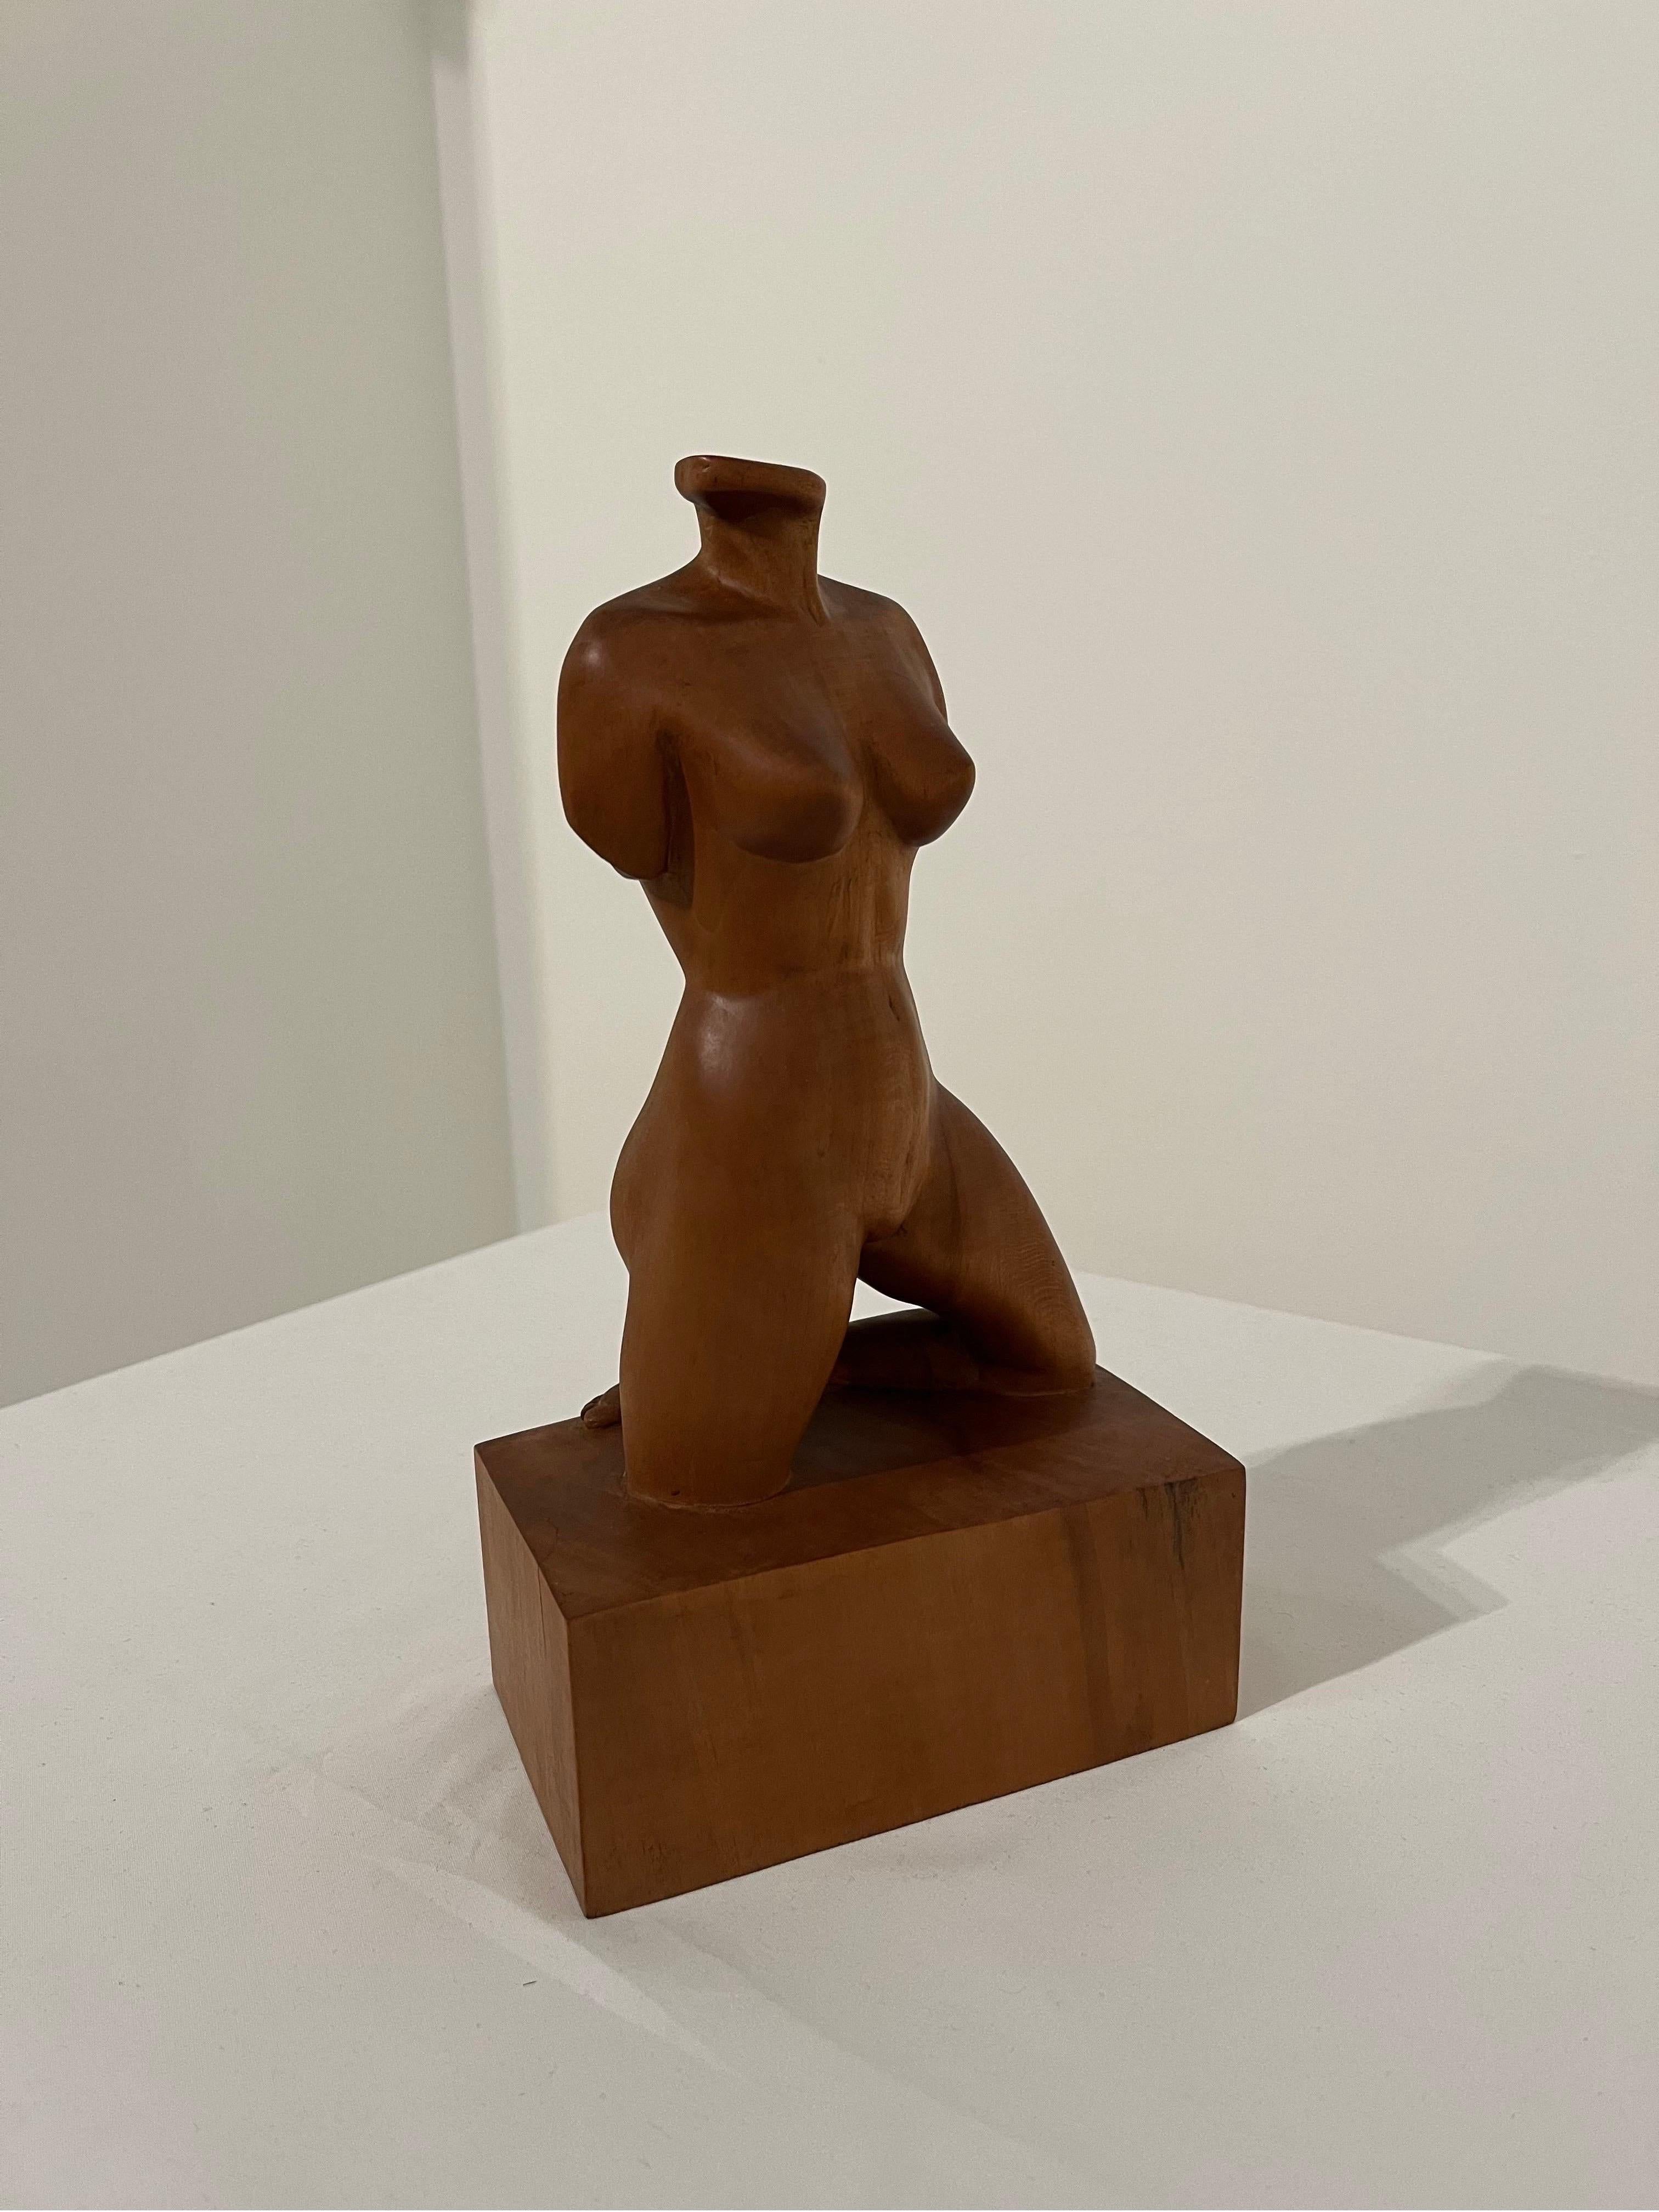 Excellente sculpture classique d'un nu féminin
Détails incroyables, grande échelle. 
Non signée. 
Depuis les années 1960